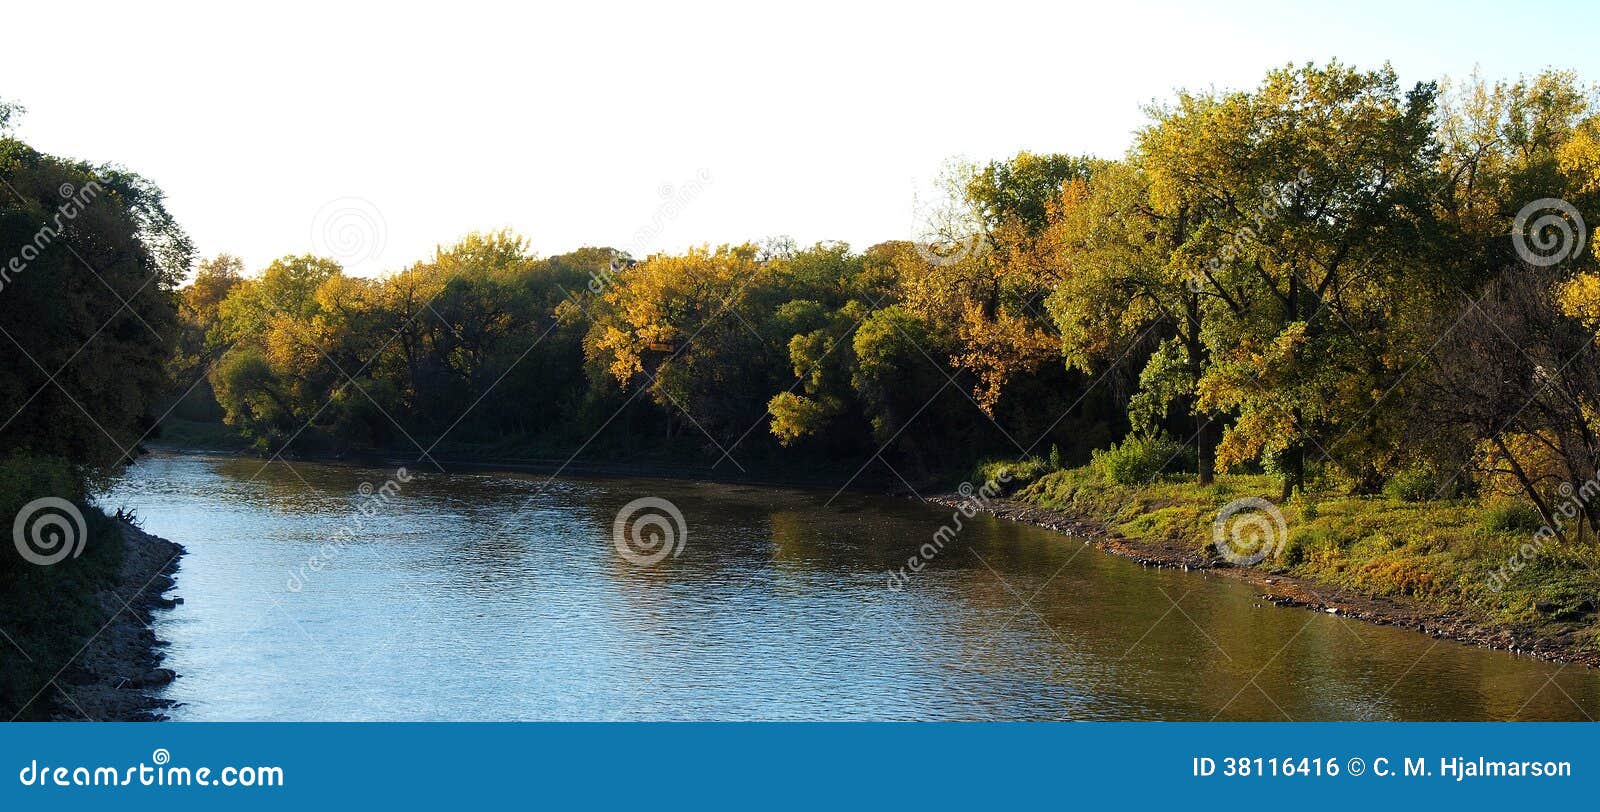 autumn on the assiniboine river